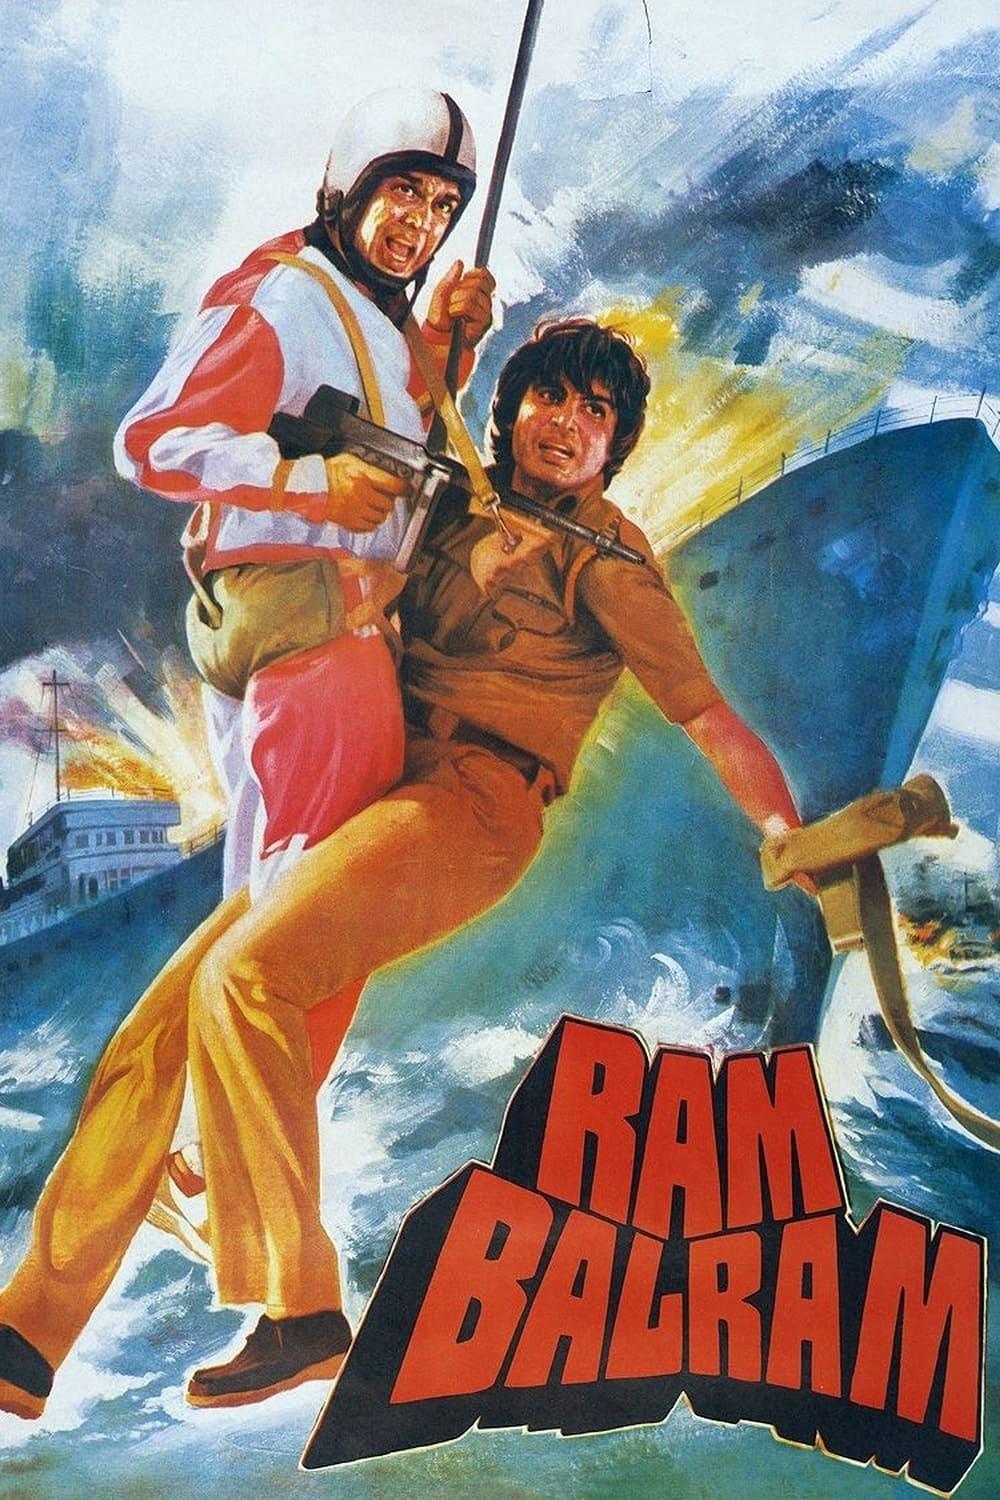 Ram Balram poster